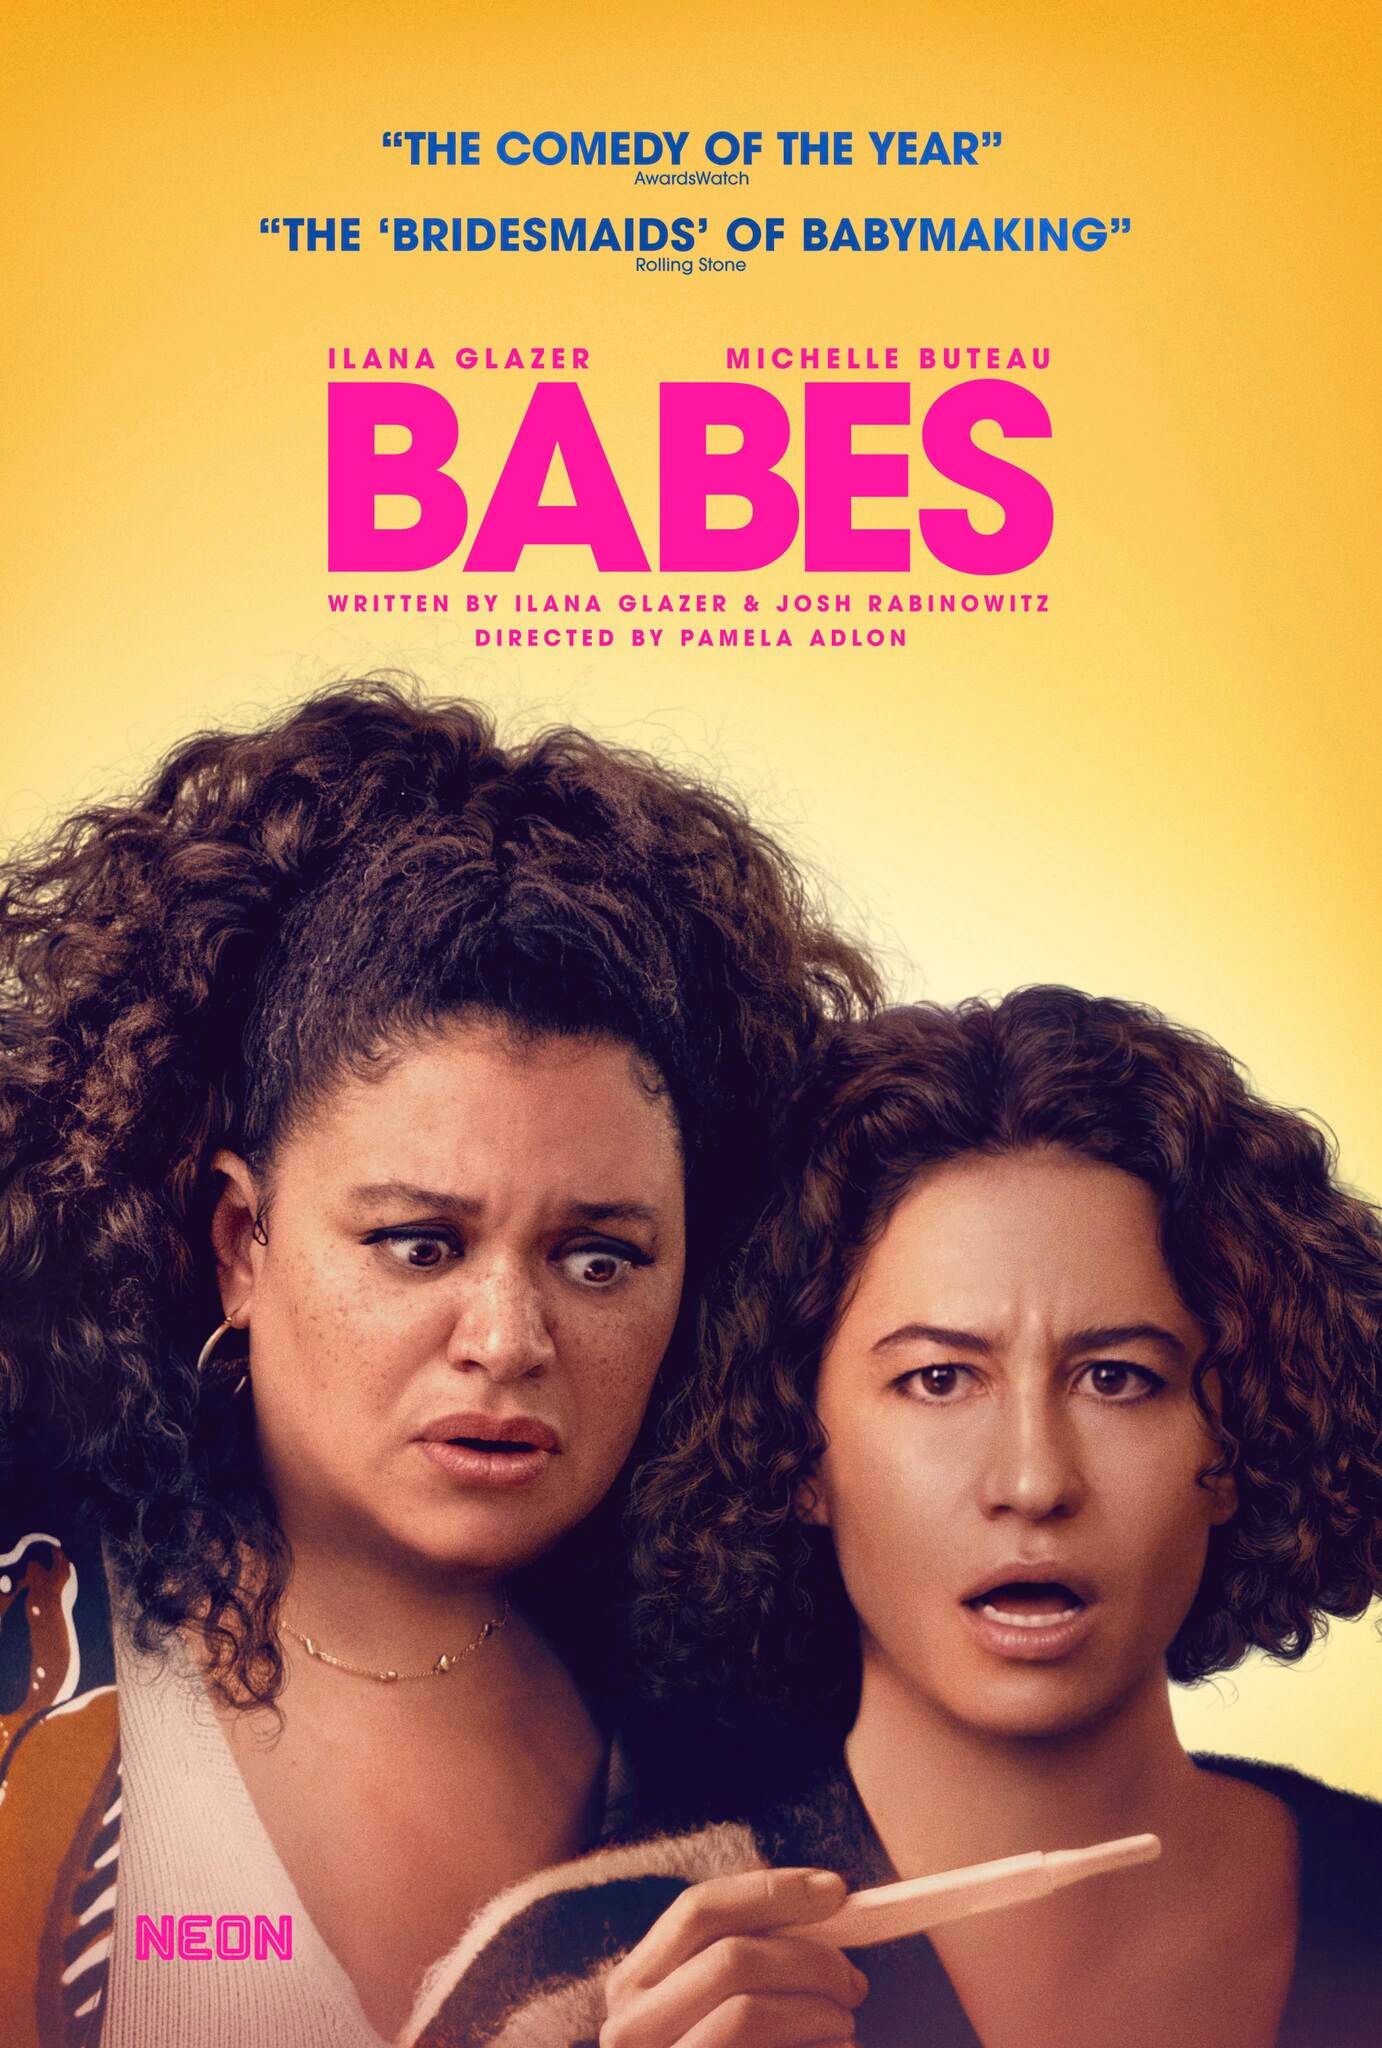 Cartaz do filme Babes mostrando Ilana Glazer e Michelle Buteau fazendo um teste de gravidez